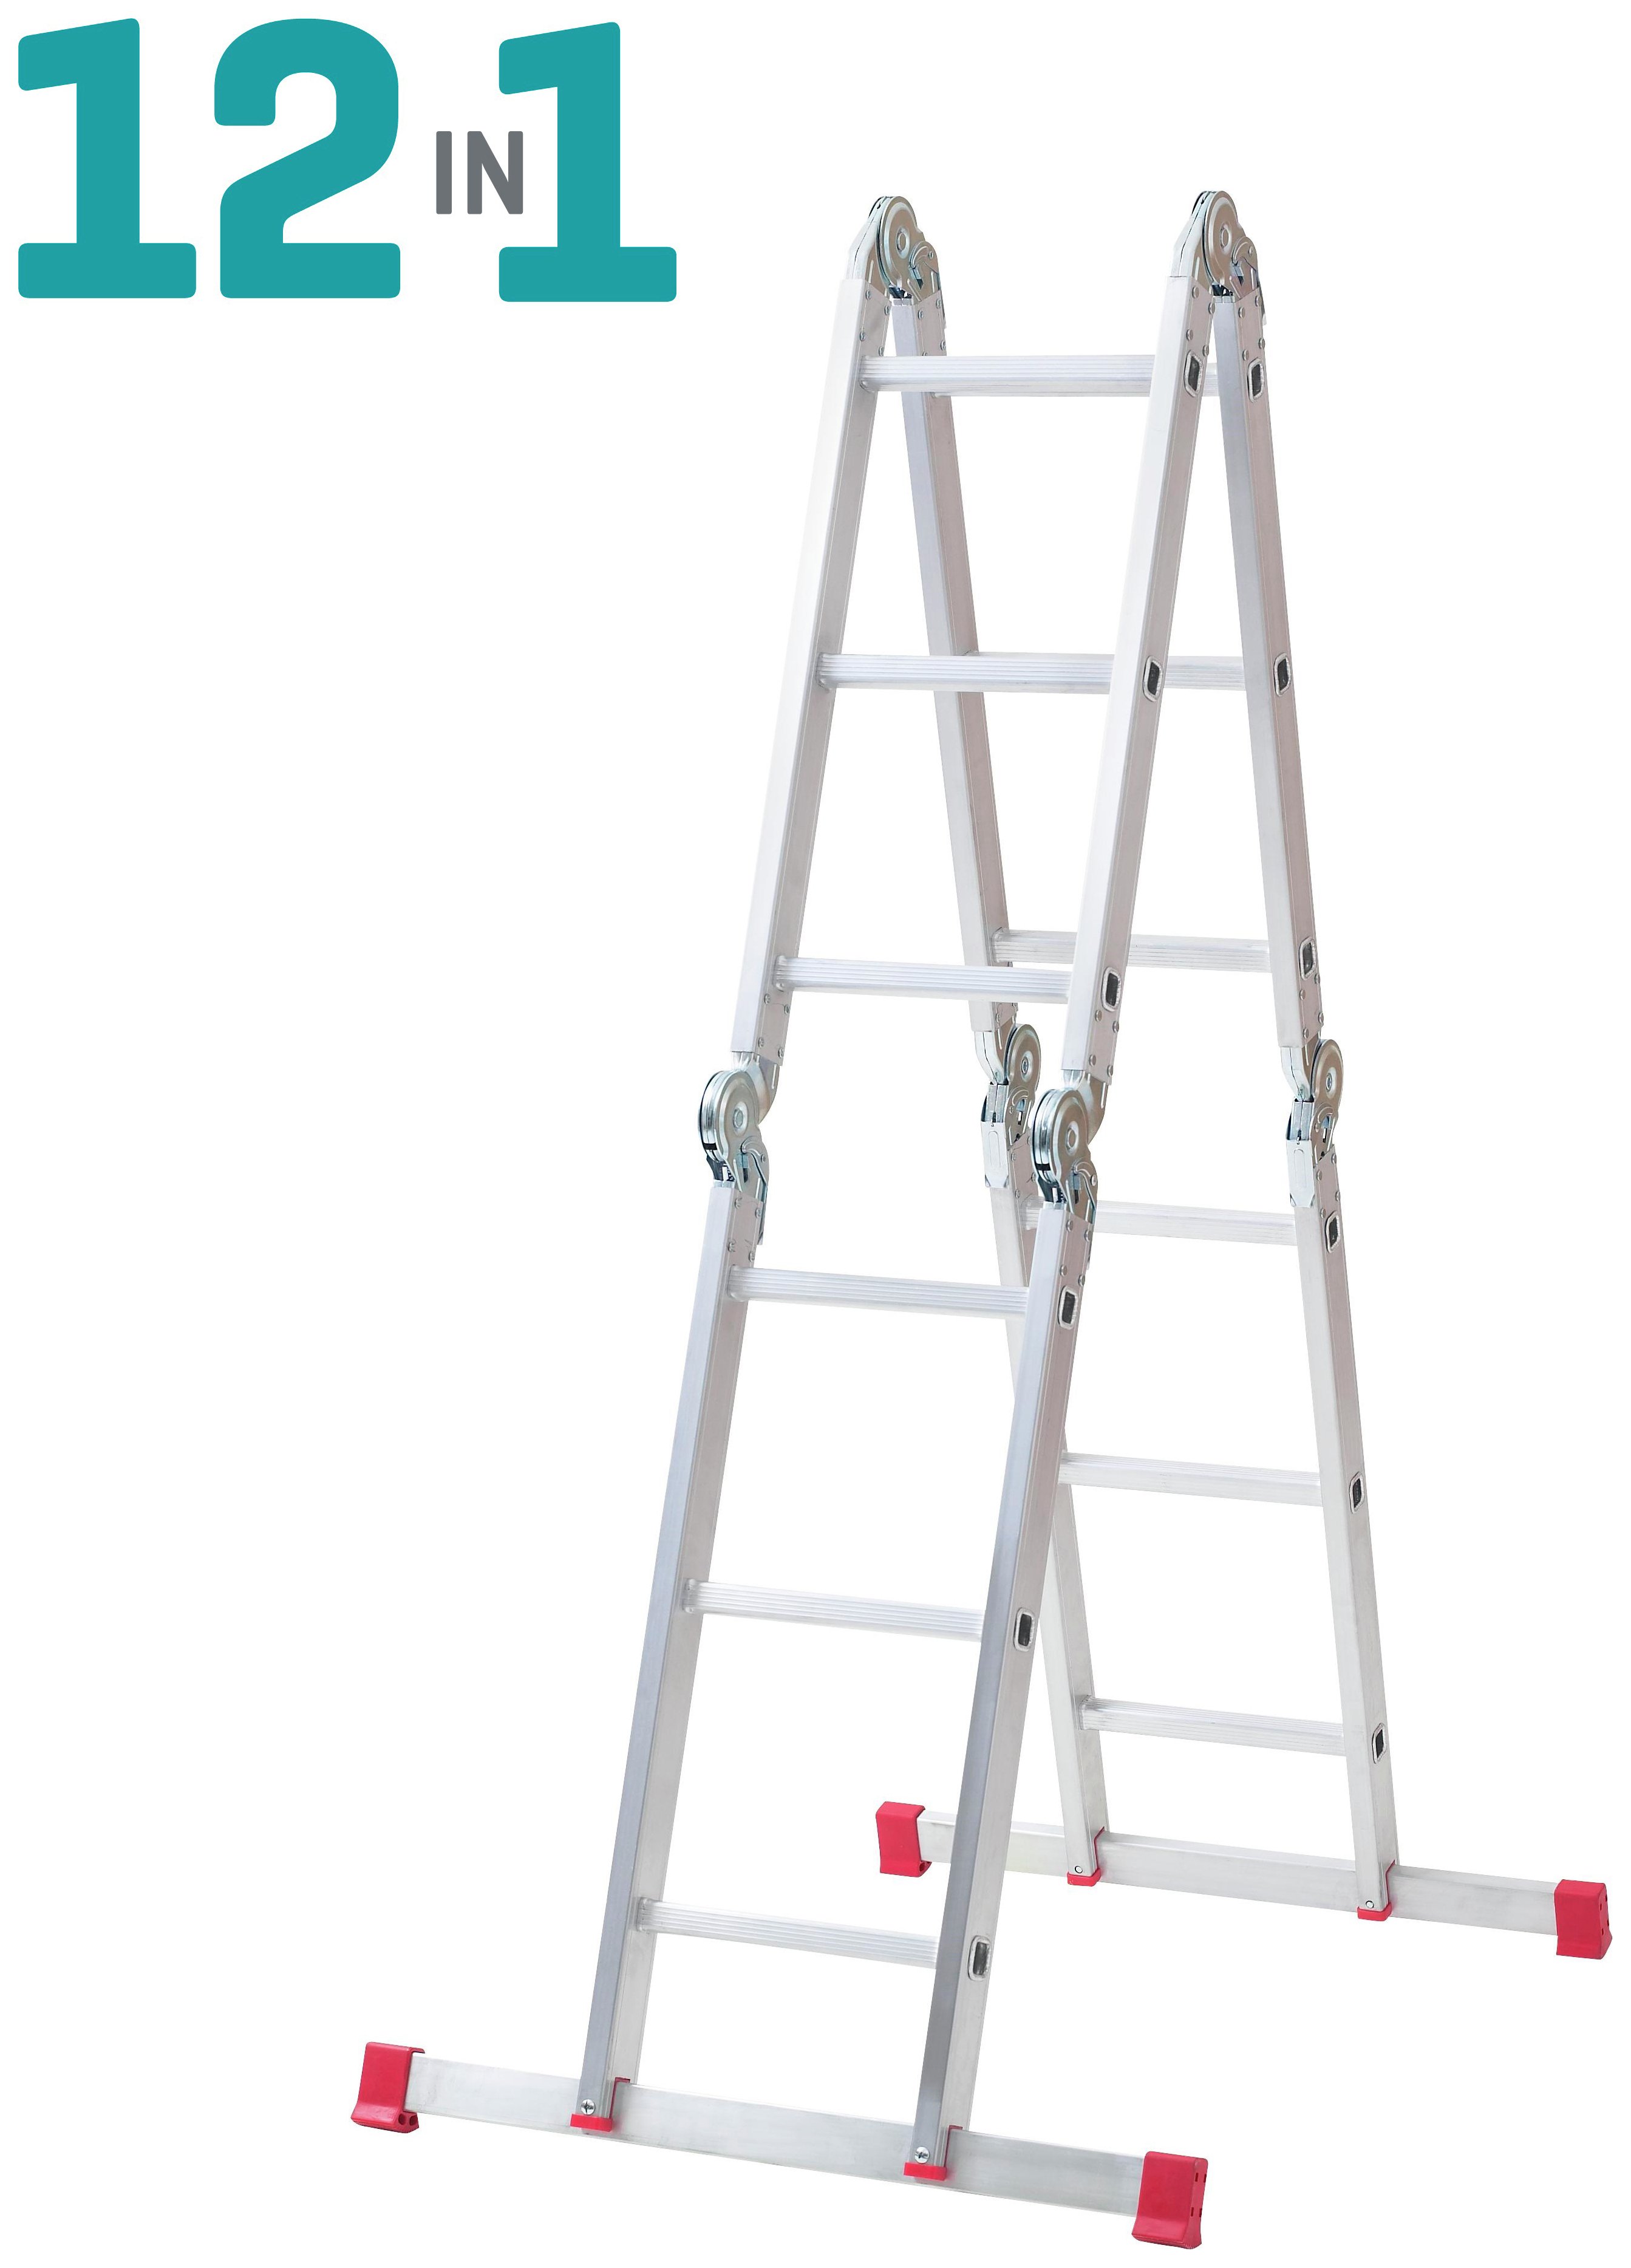 Abru Multi Purpose 12 in 1 Ladder 4.03m Reach Height*